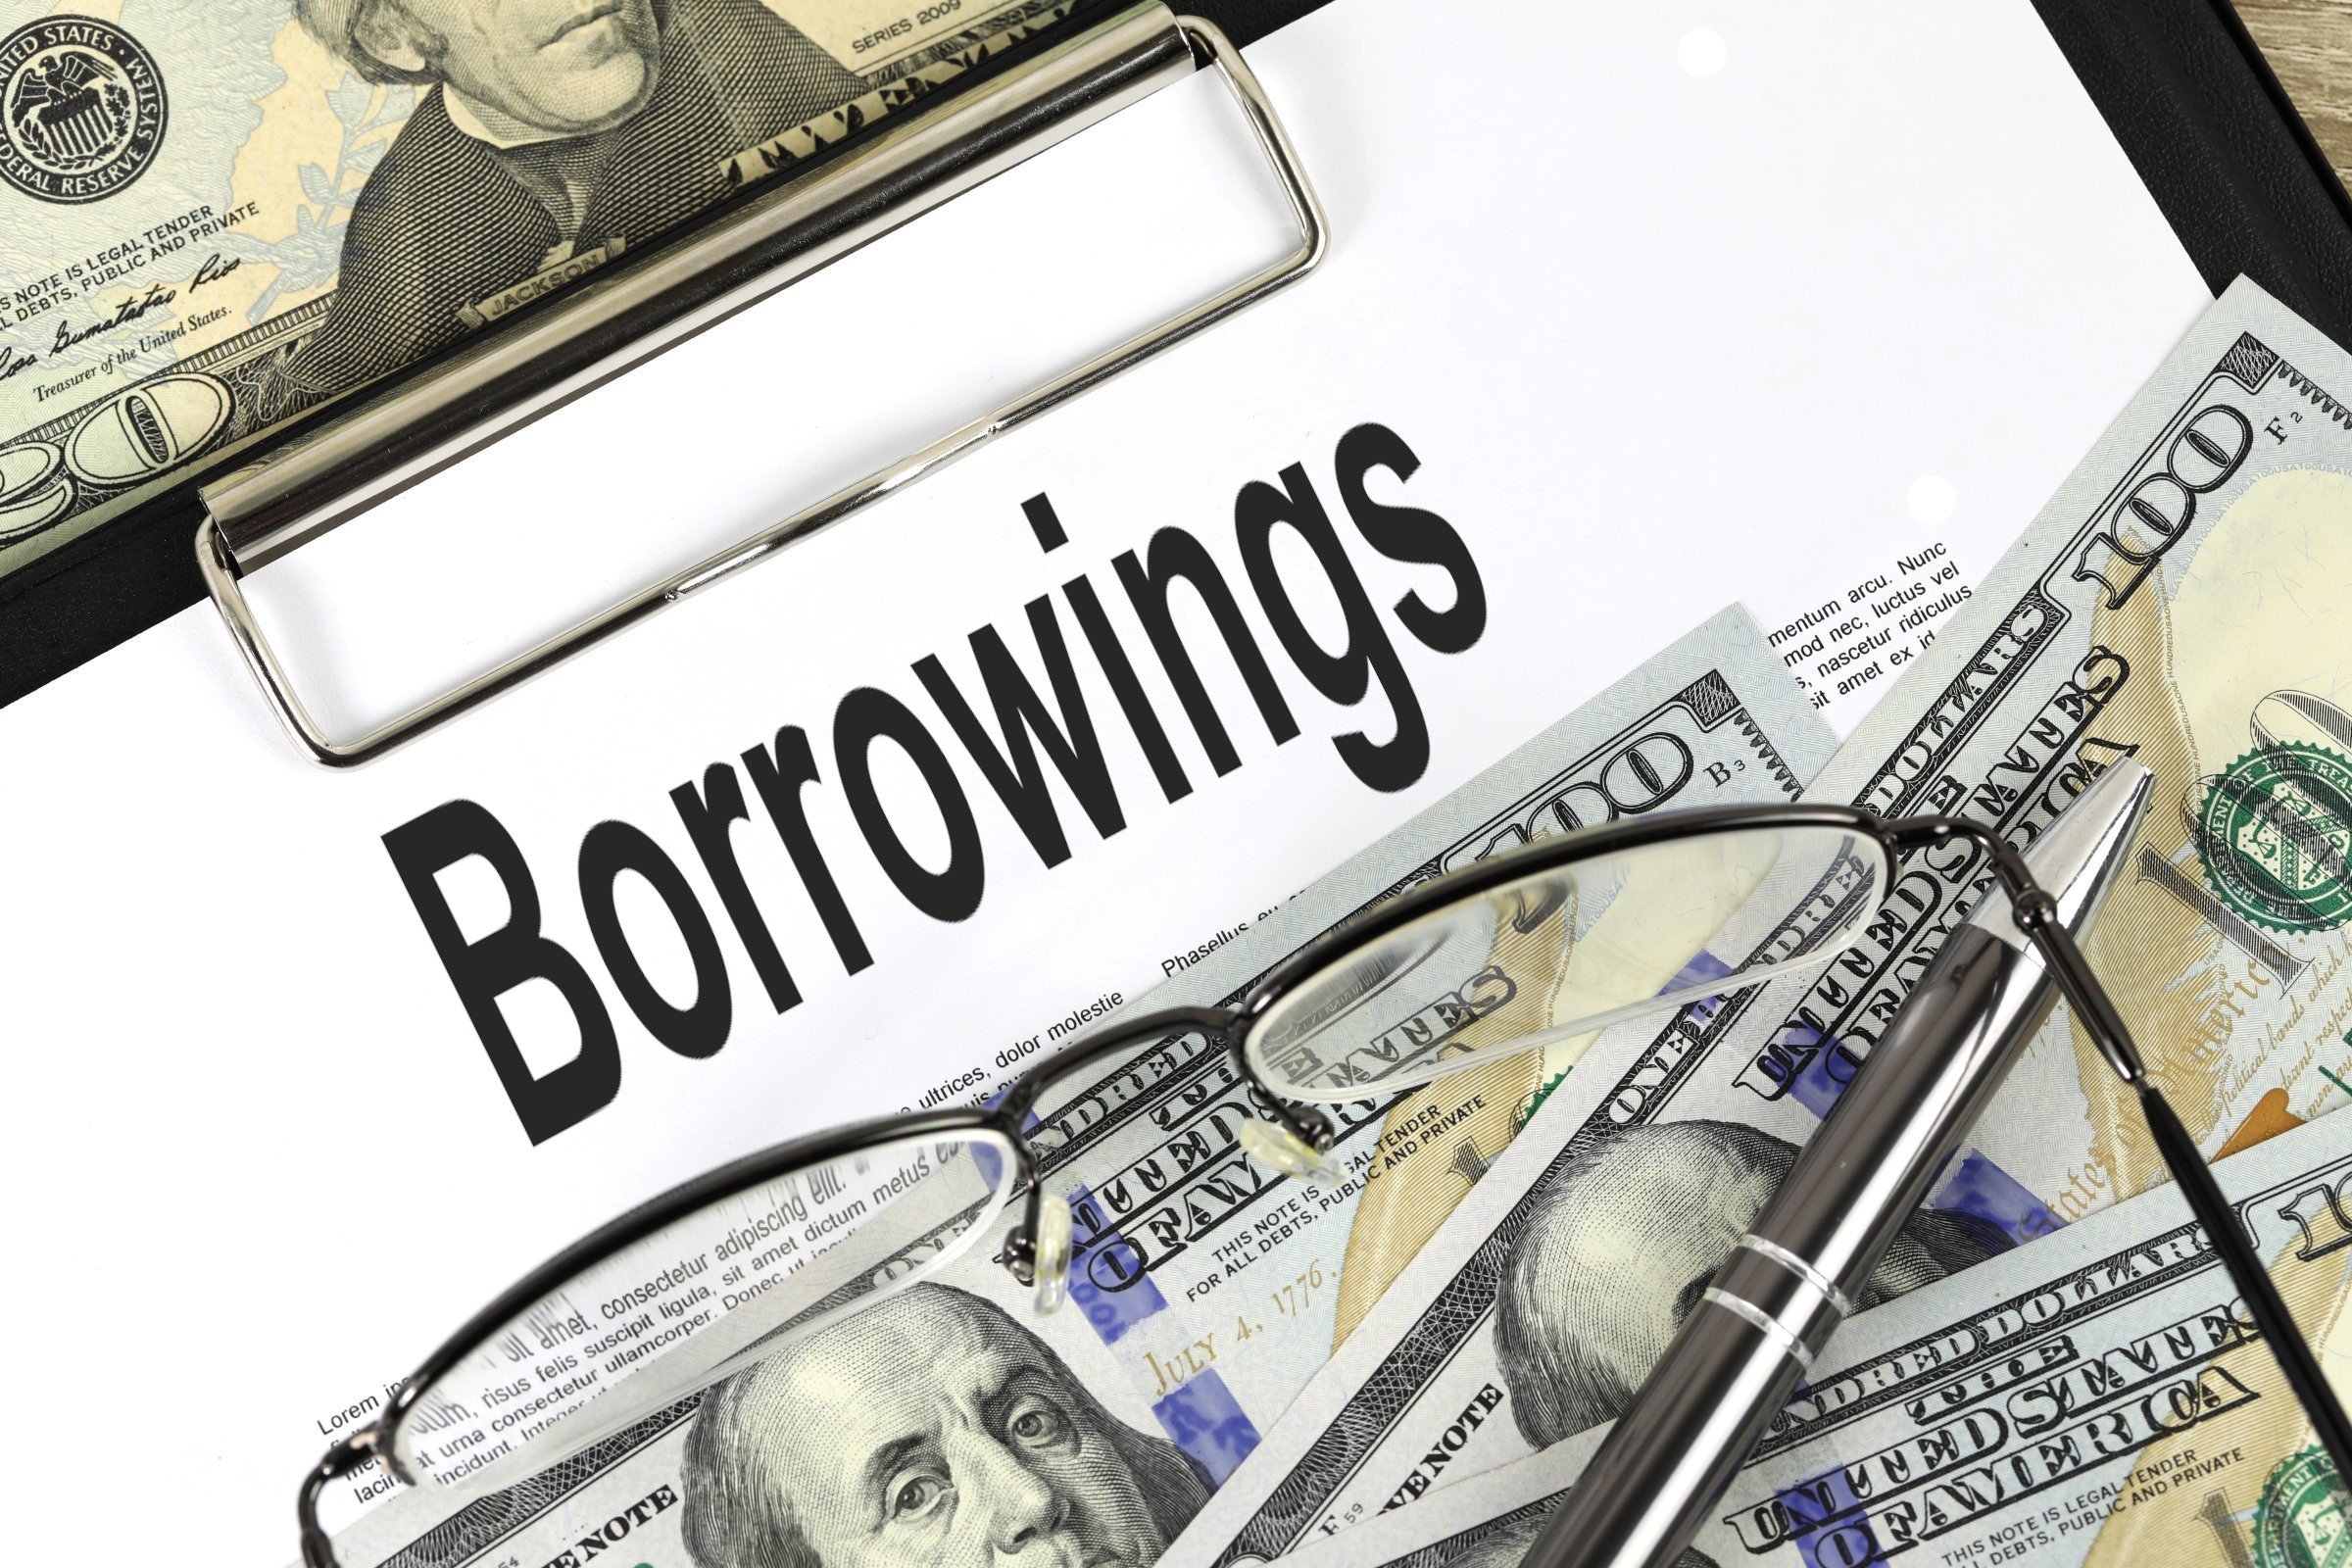 borrowings